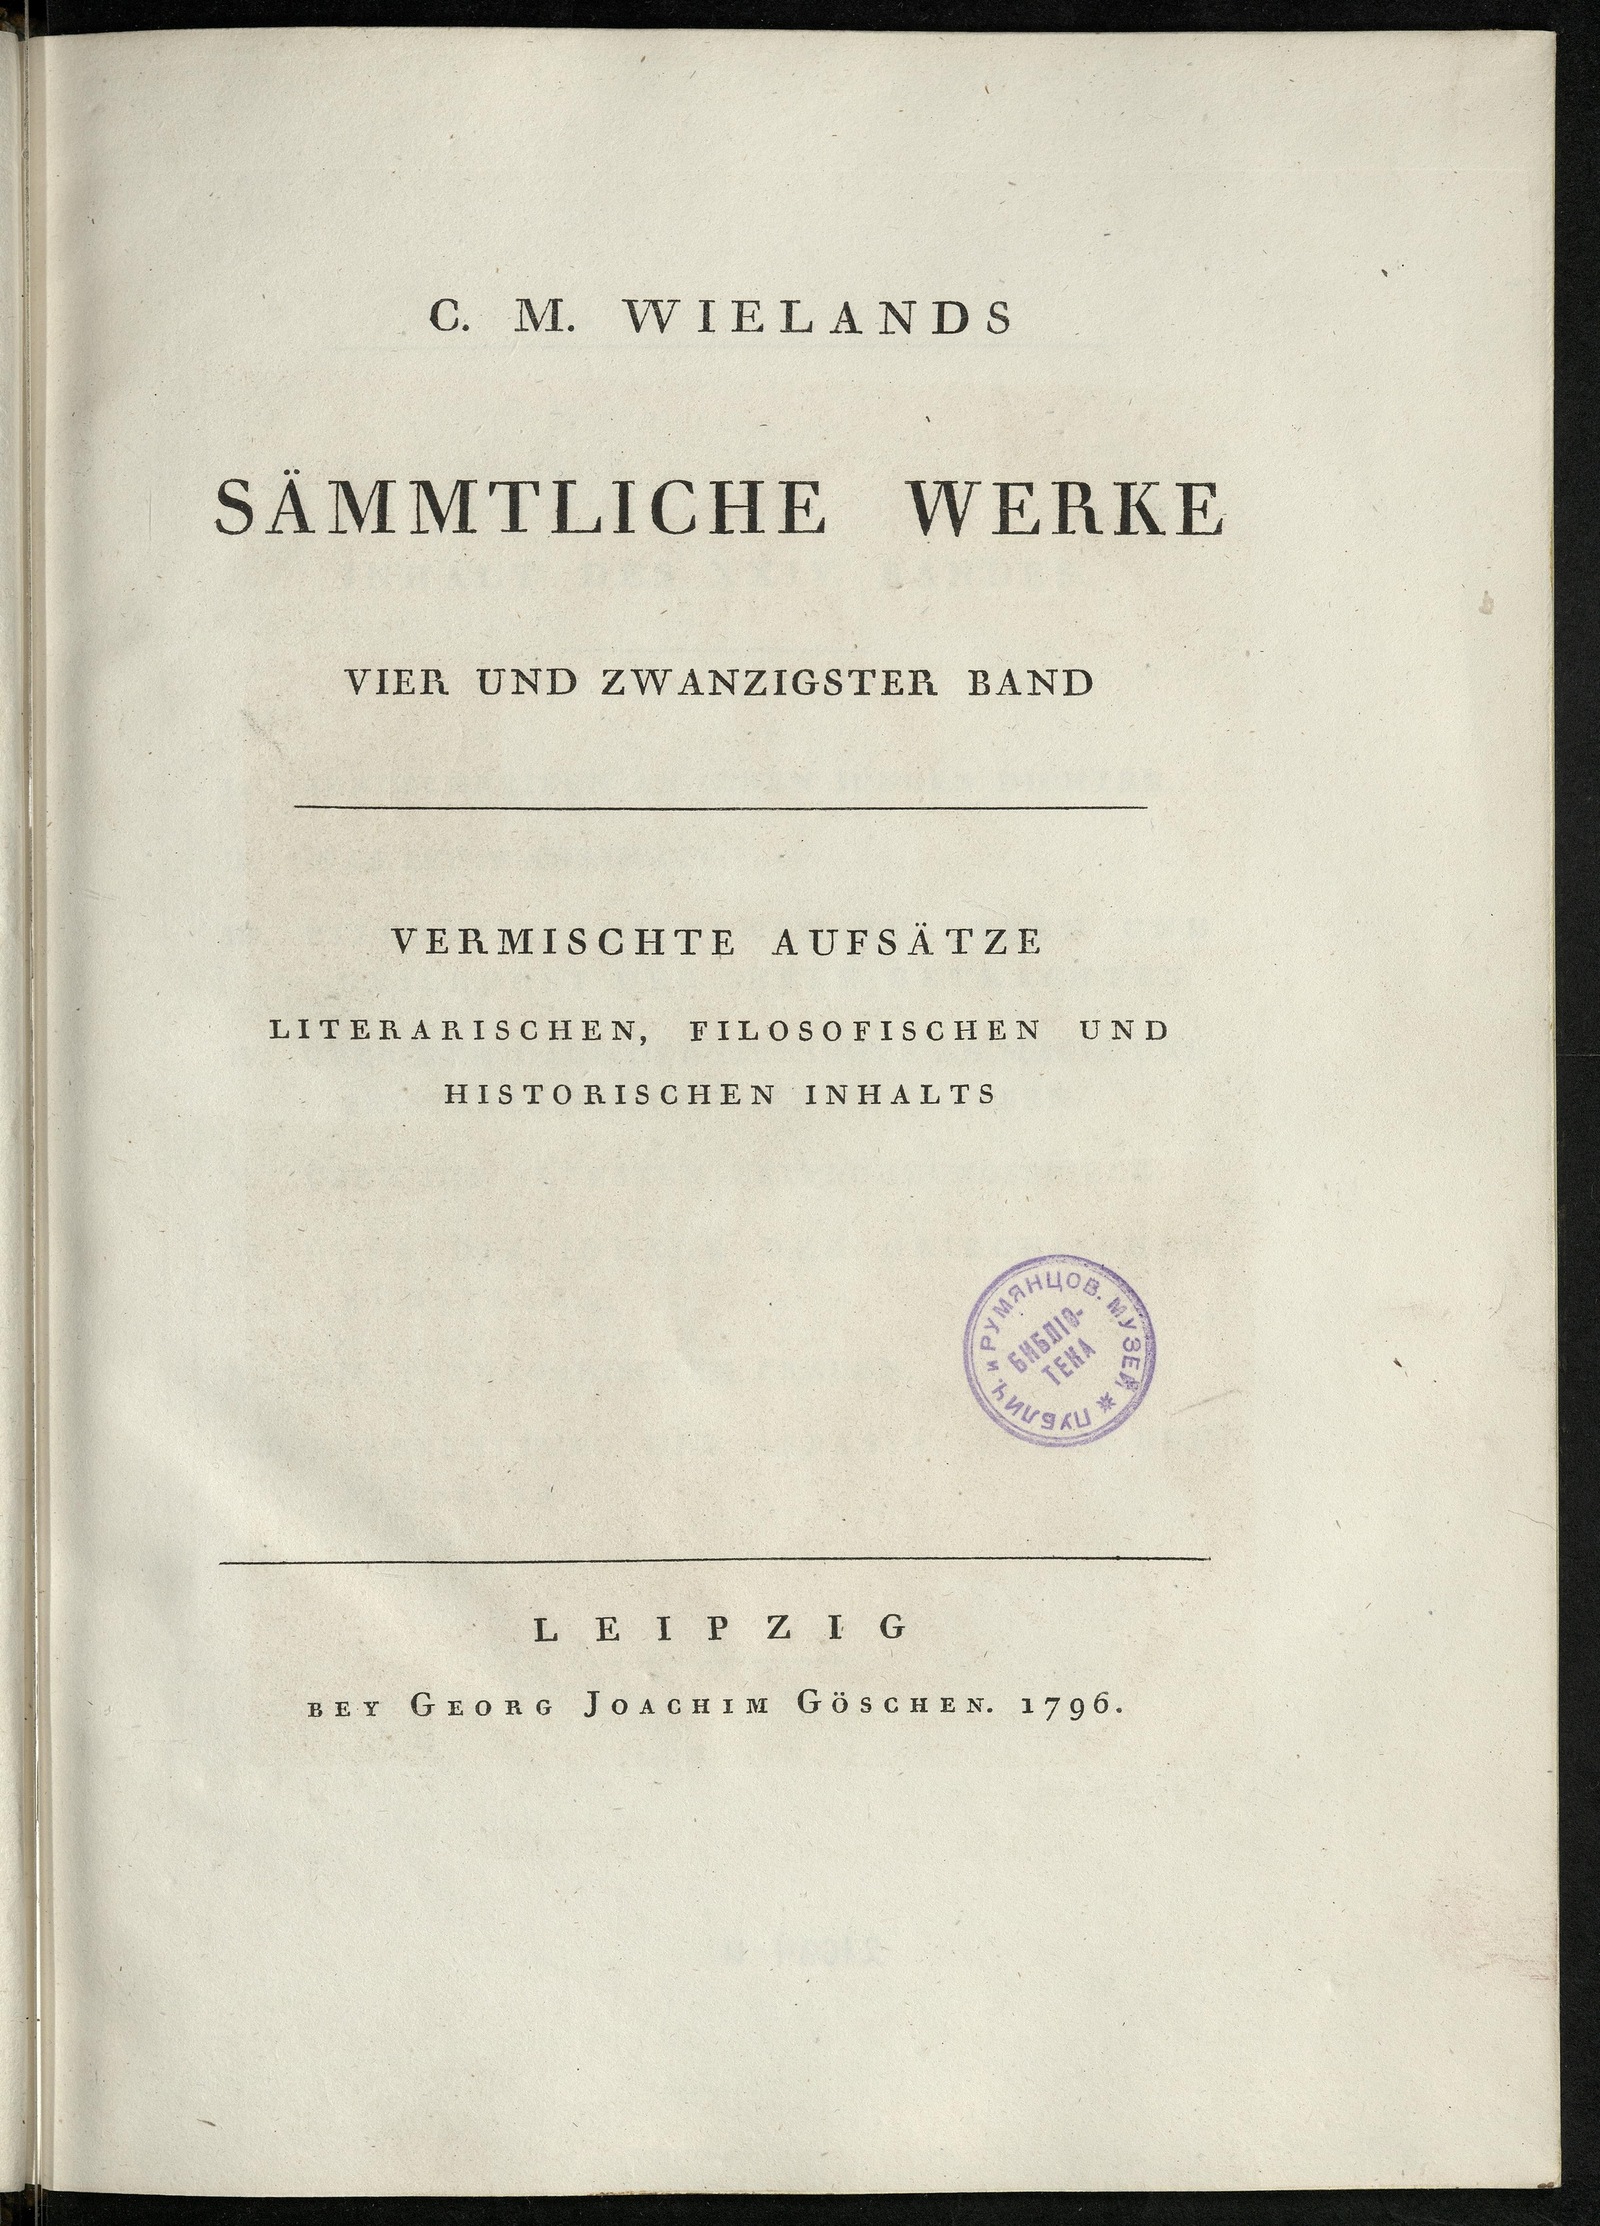 Изображение книги C. M. Wielands Sämmtliche Werke. Bd. 24. Vermischte Aufsätze literarischen, filosophischen und historischen Inhalts